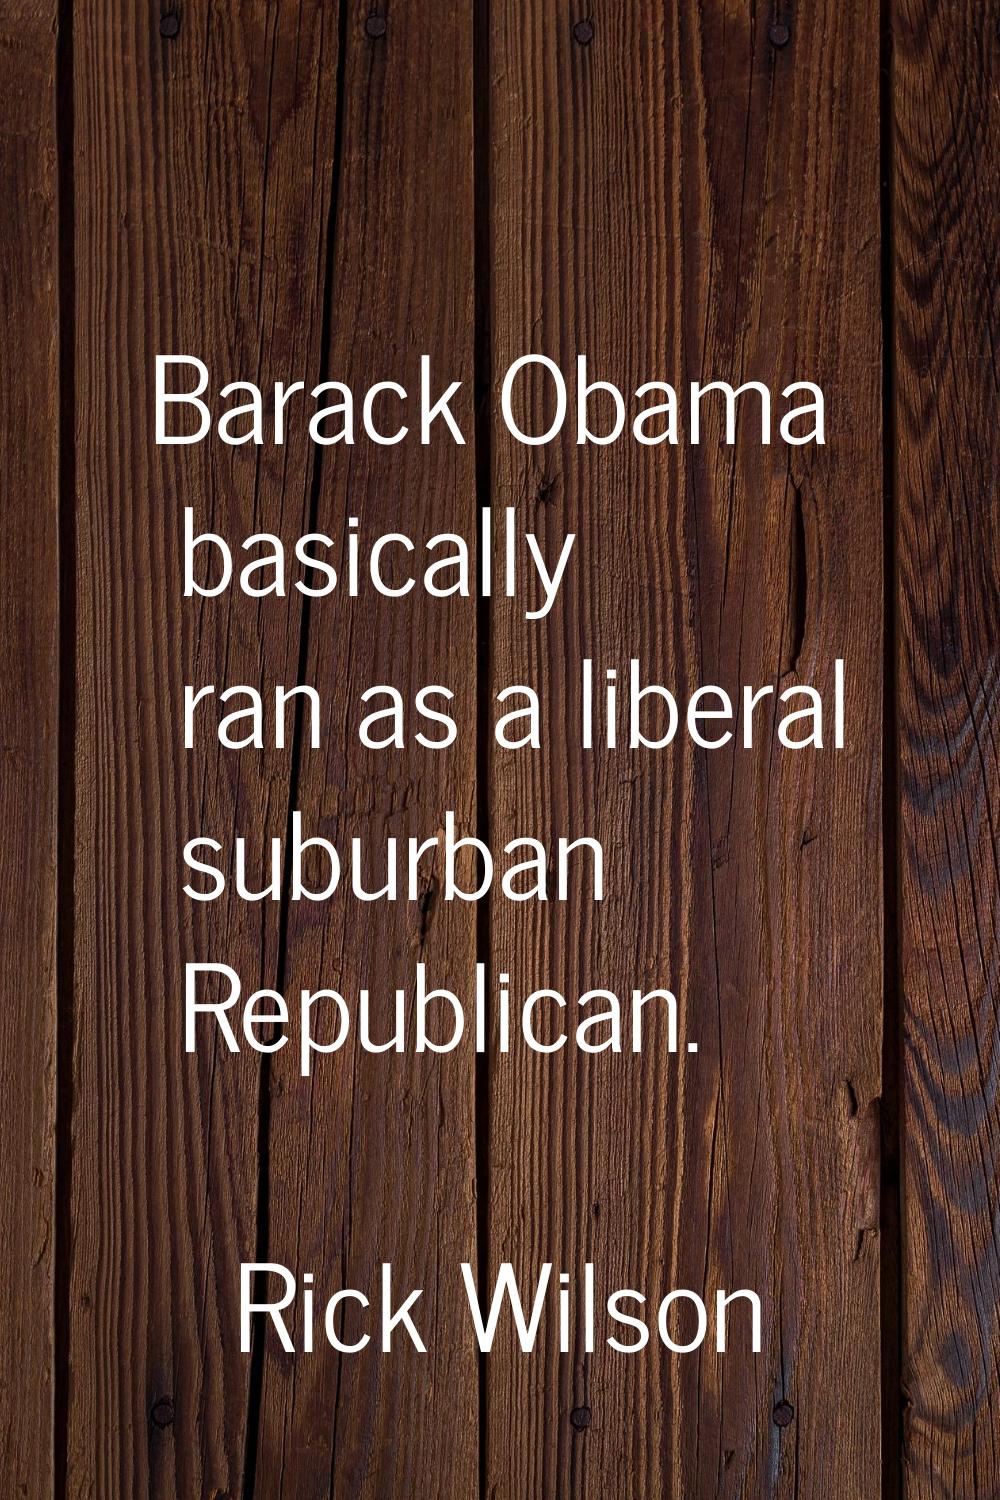 Barack Obama basically ran as a liberal suburban Republican.